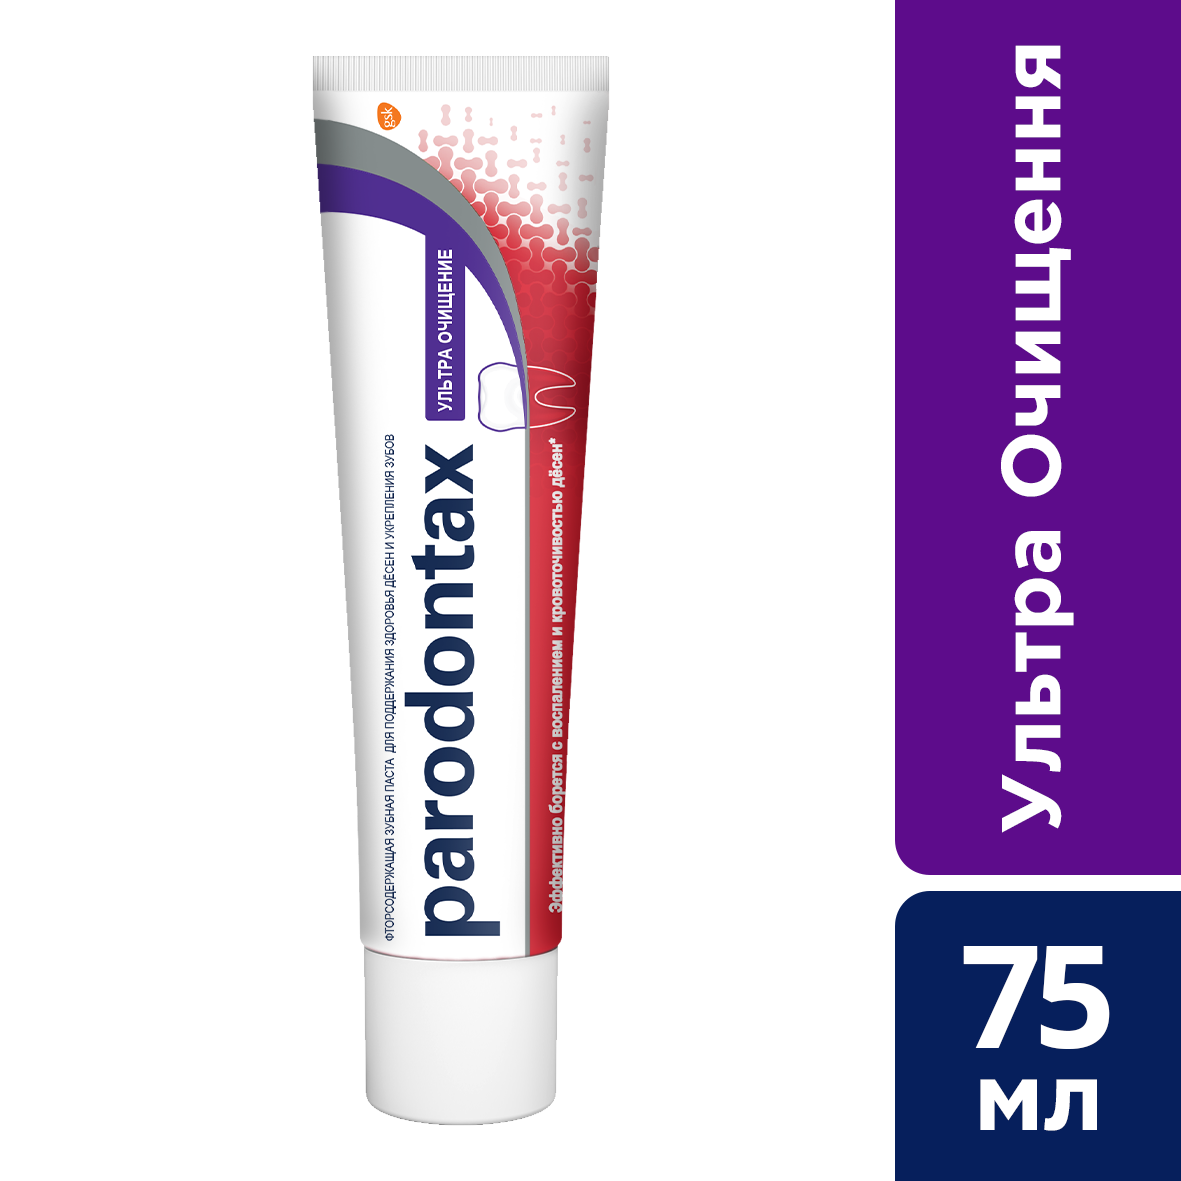 Зубная паста Parodontax Ультра Очищение, 75 мл - фото 5